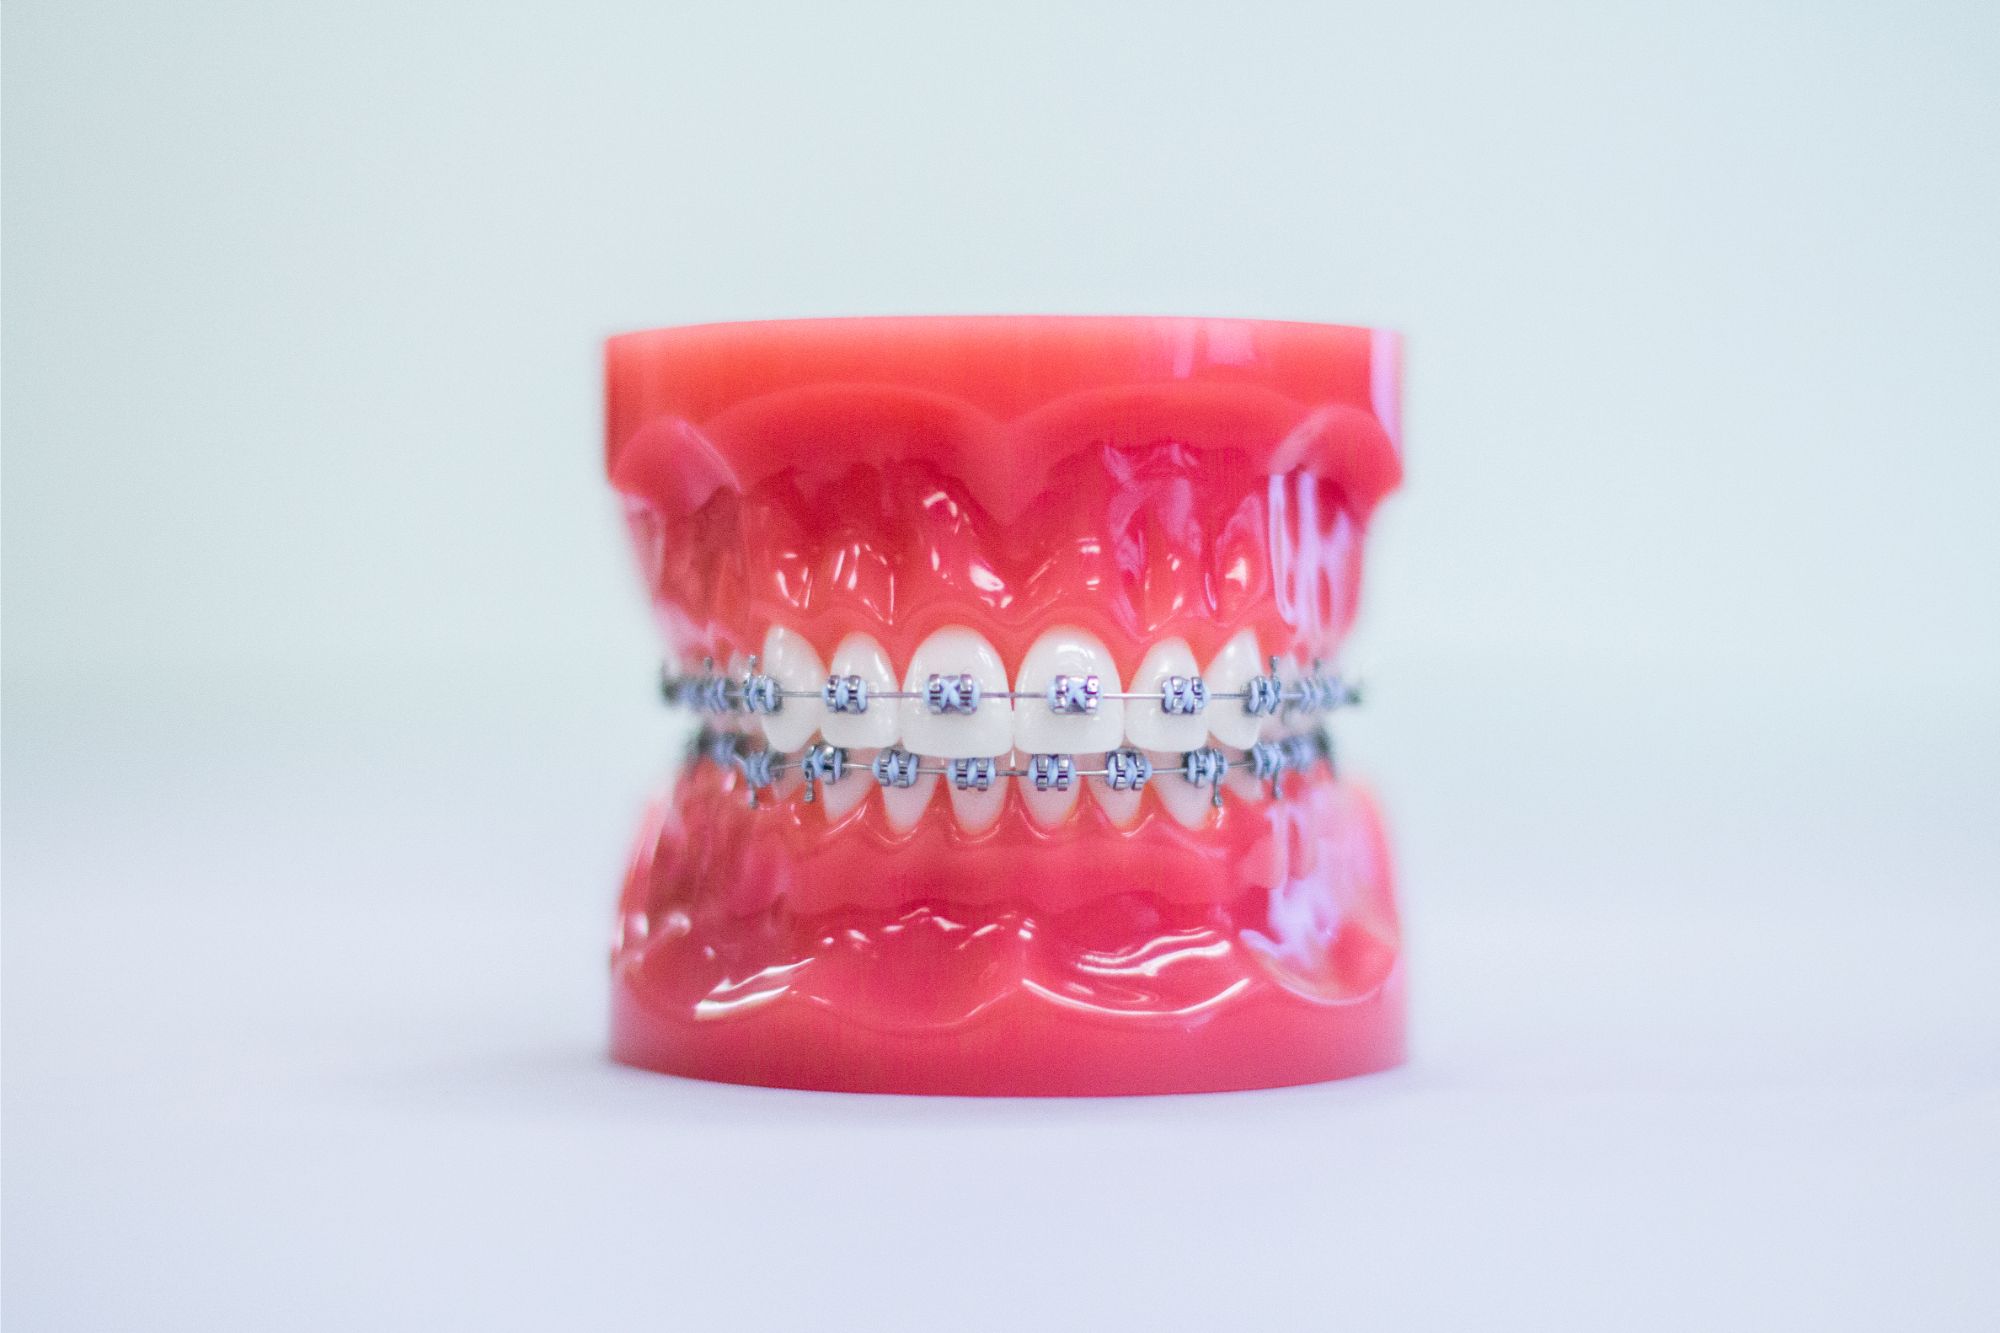 Orthodontics - Metal Braces